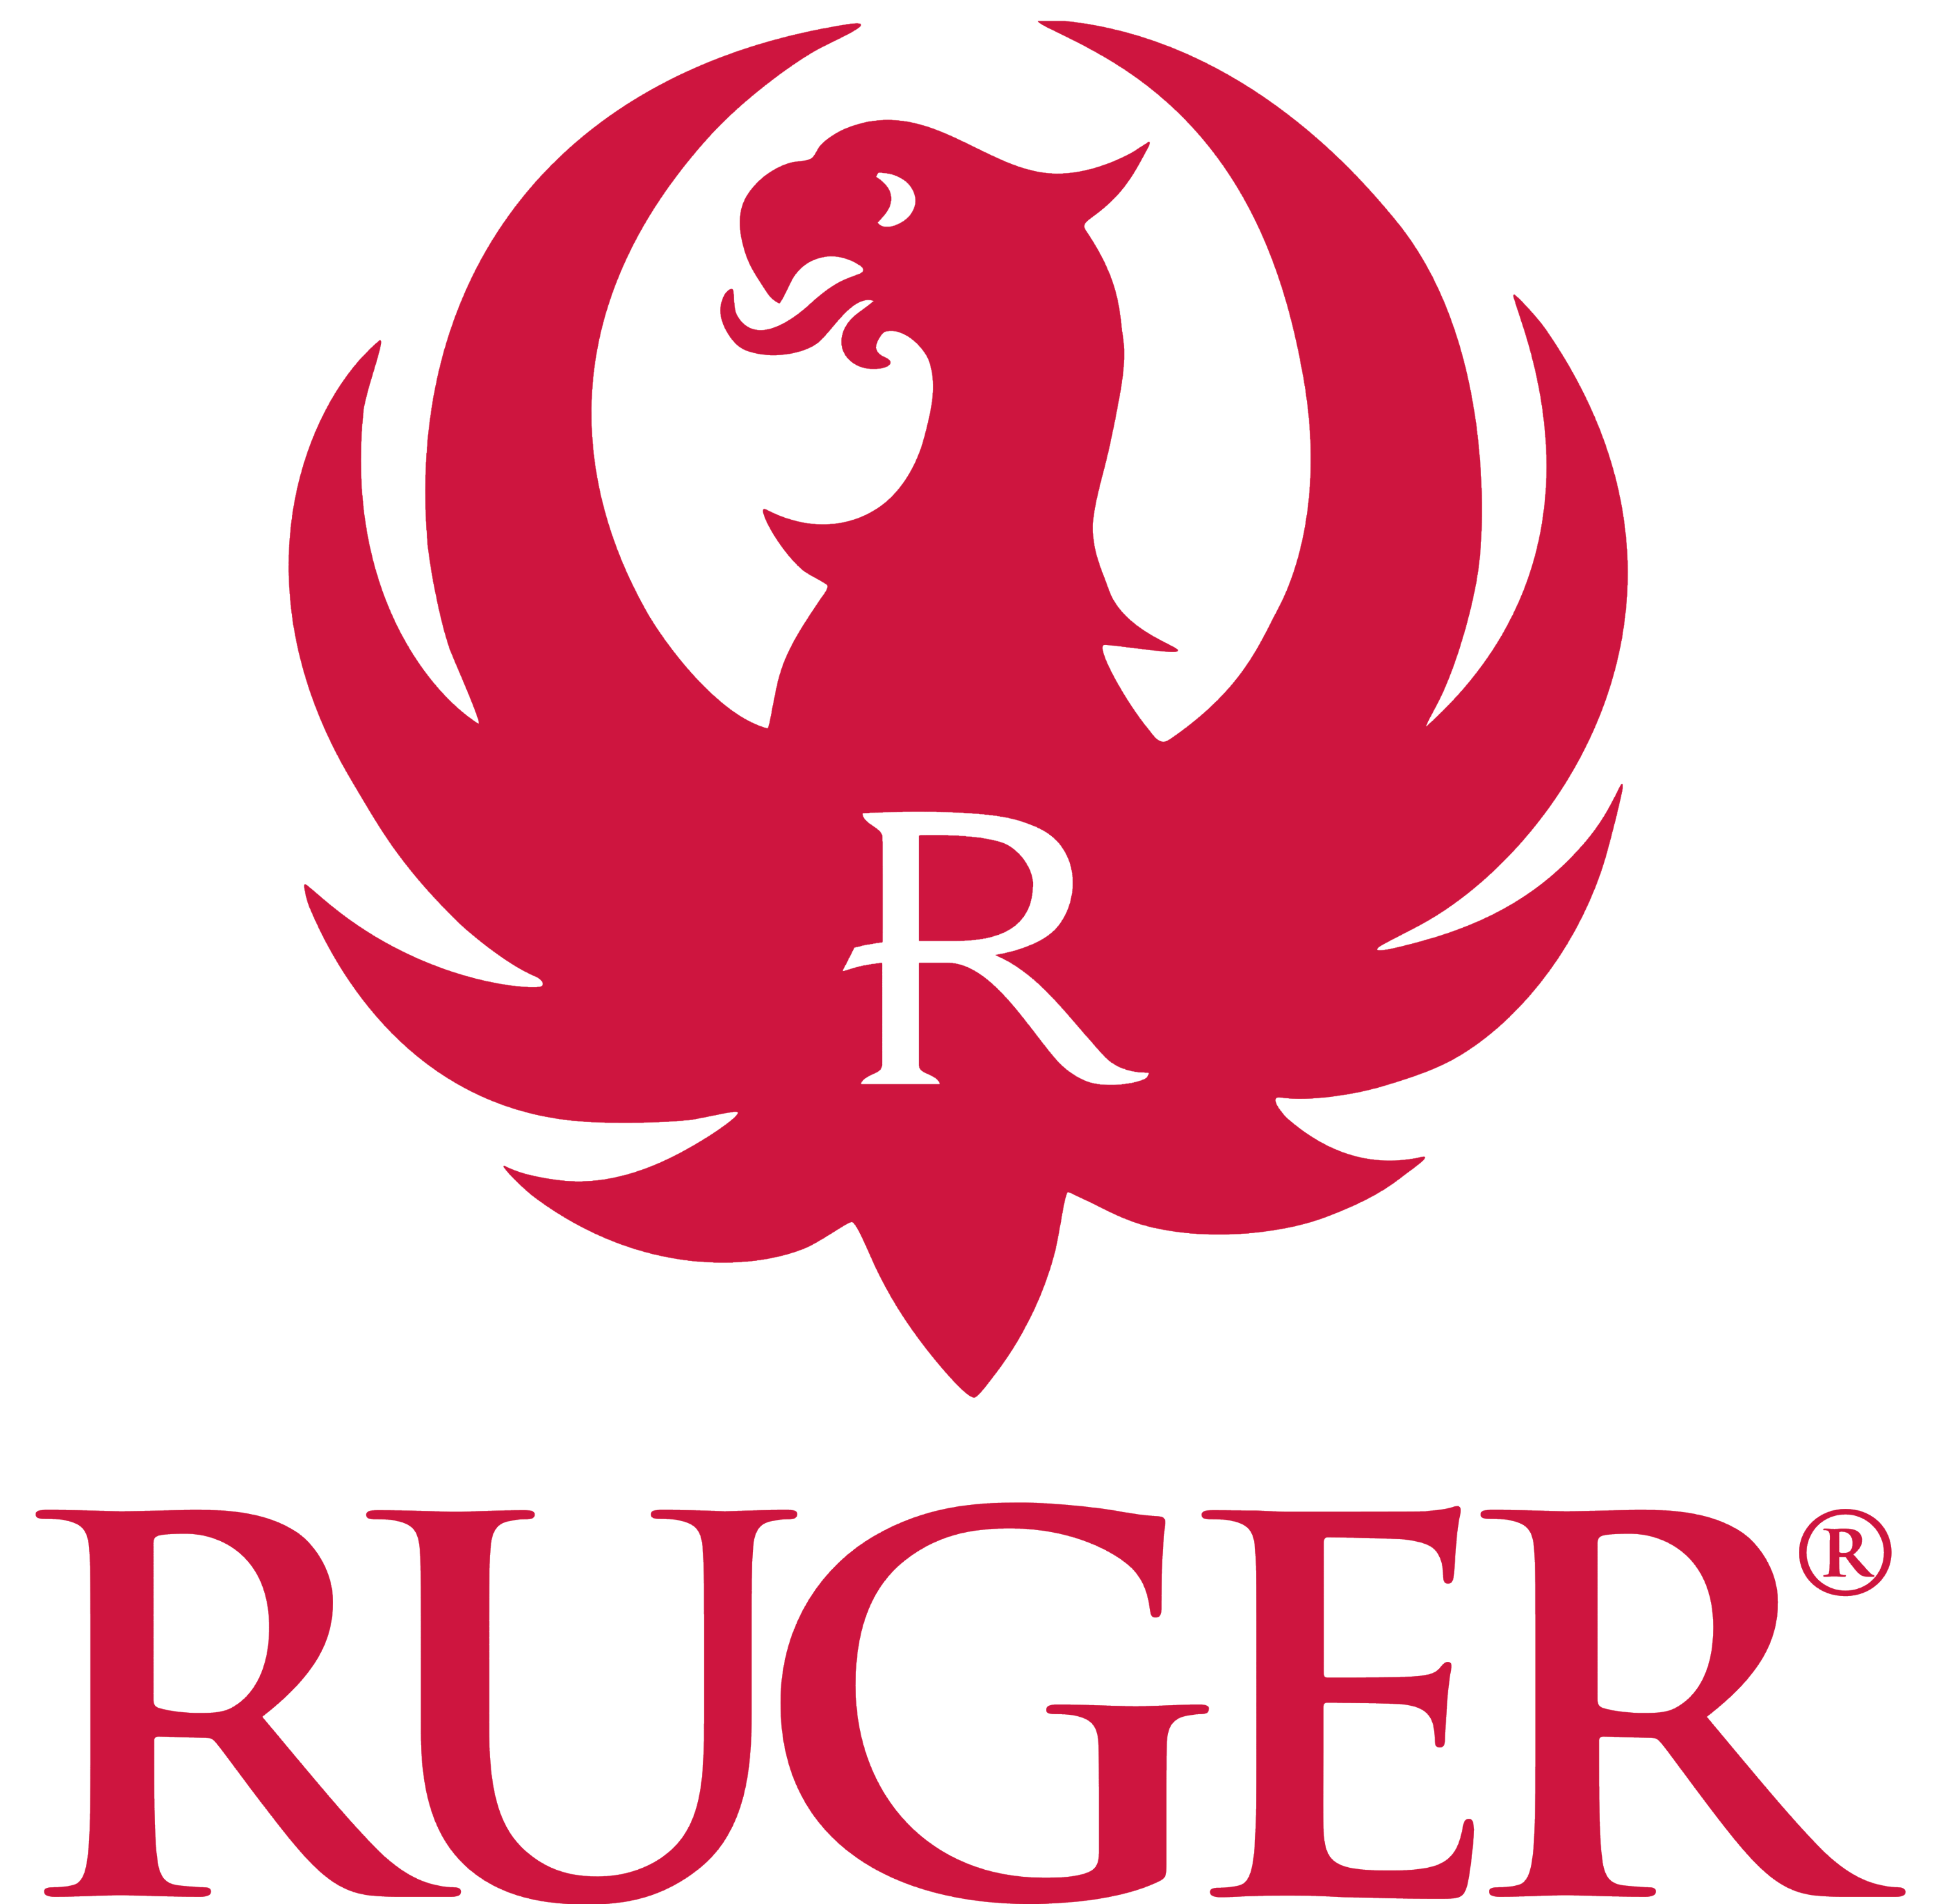 Ruger logo, logotype